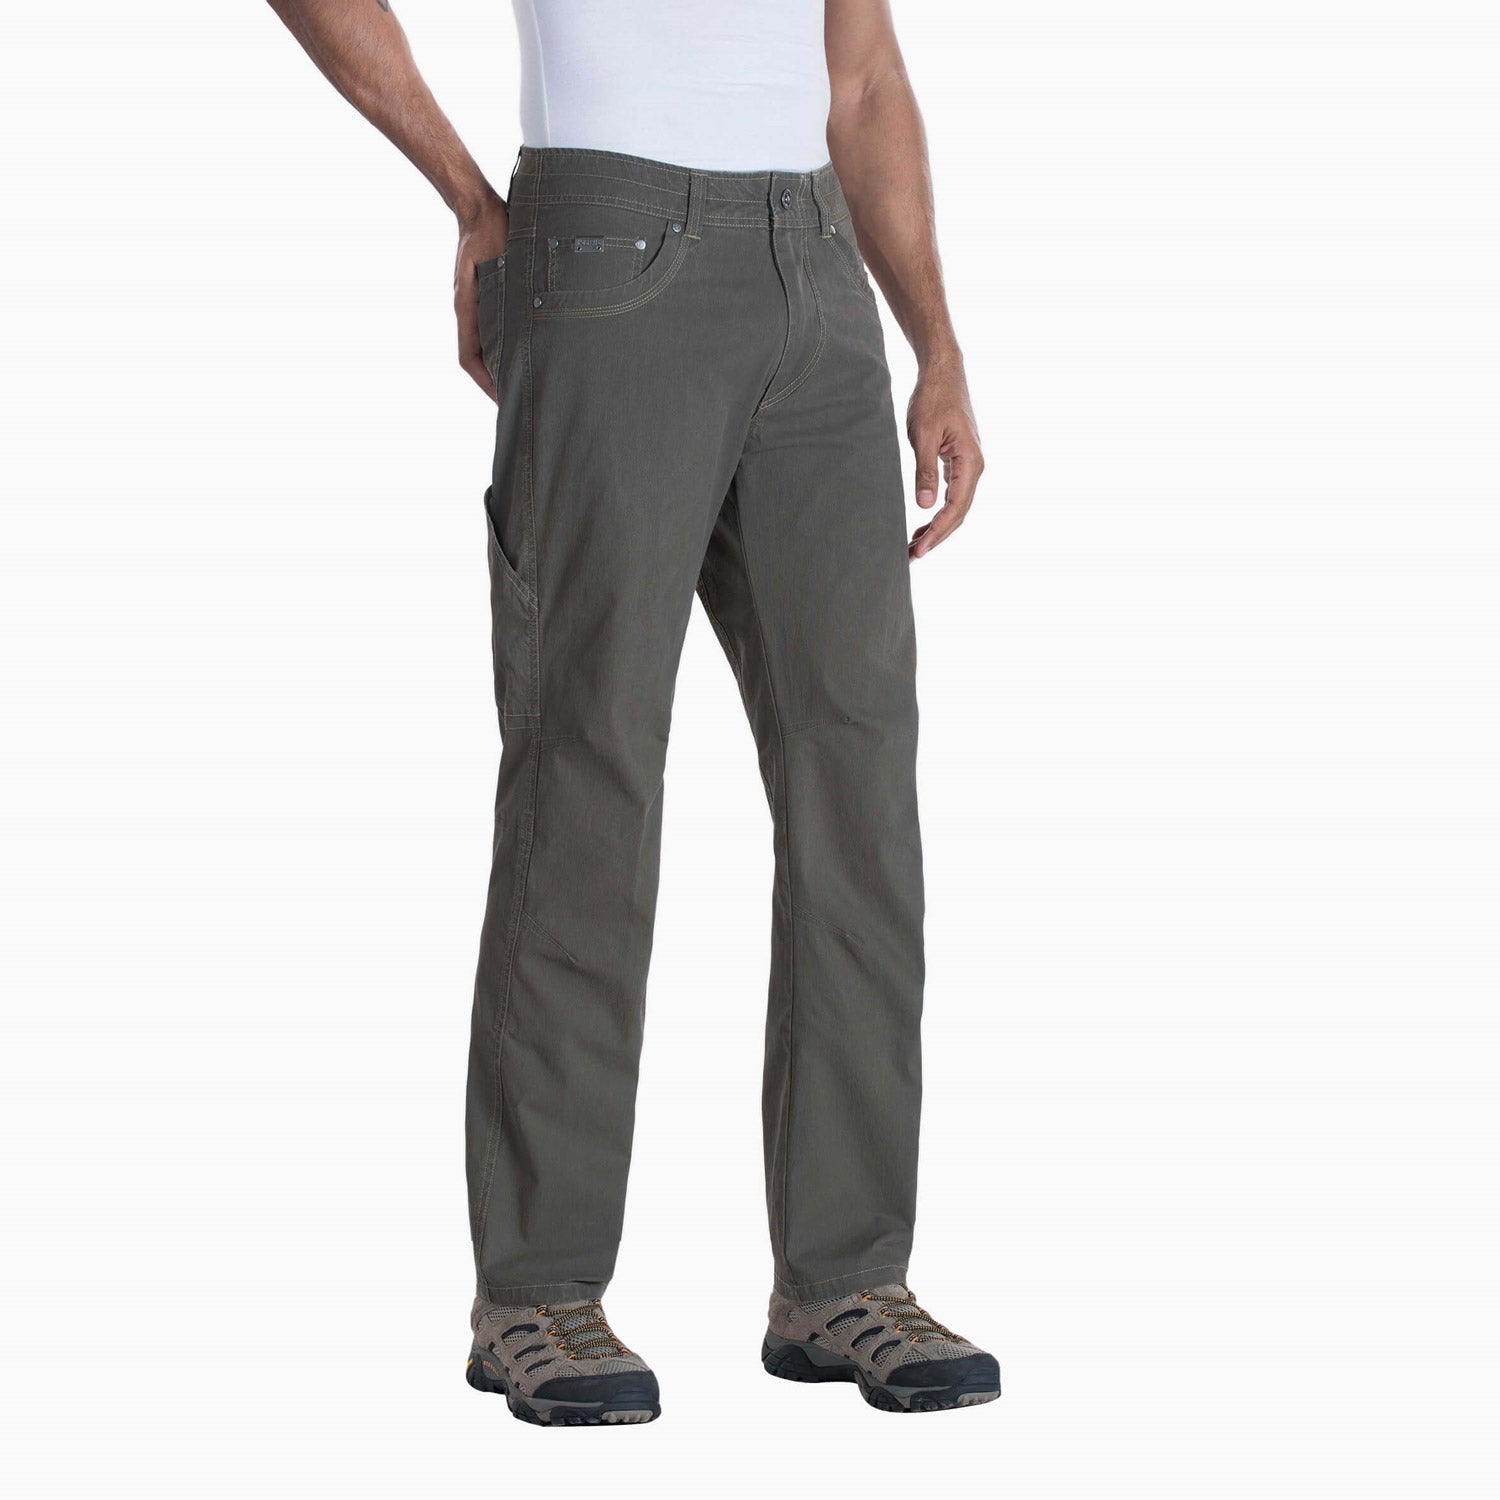 KÜHL Men's Revolvr™ Pant - Work World - Workwear, Work Boots, Safety Gear